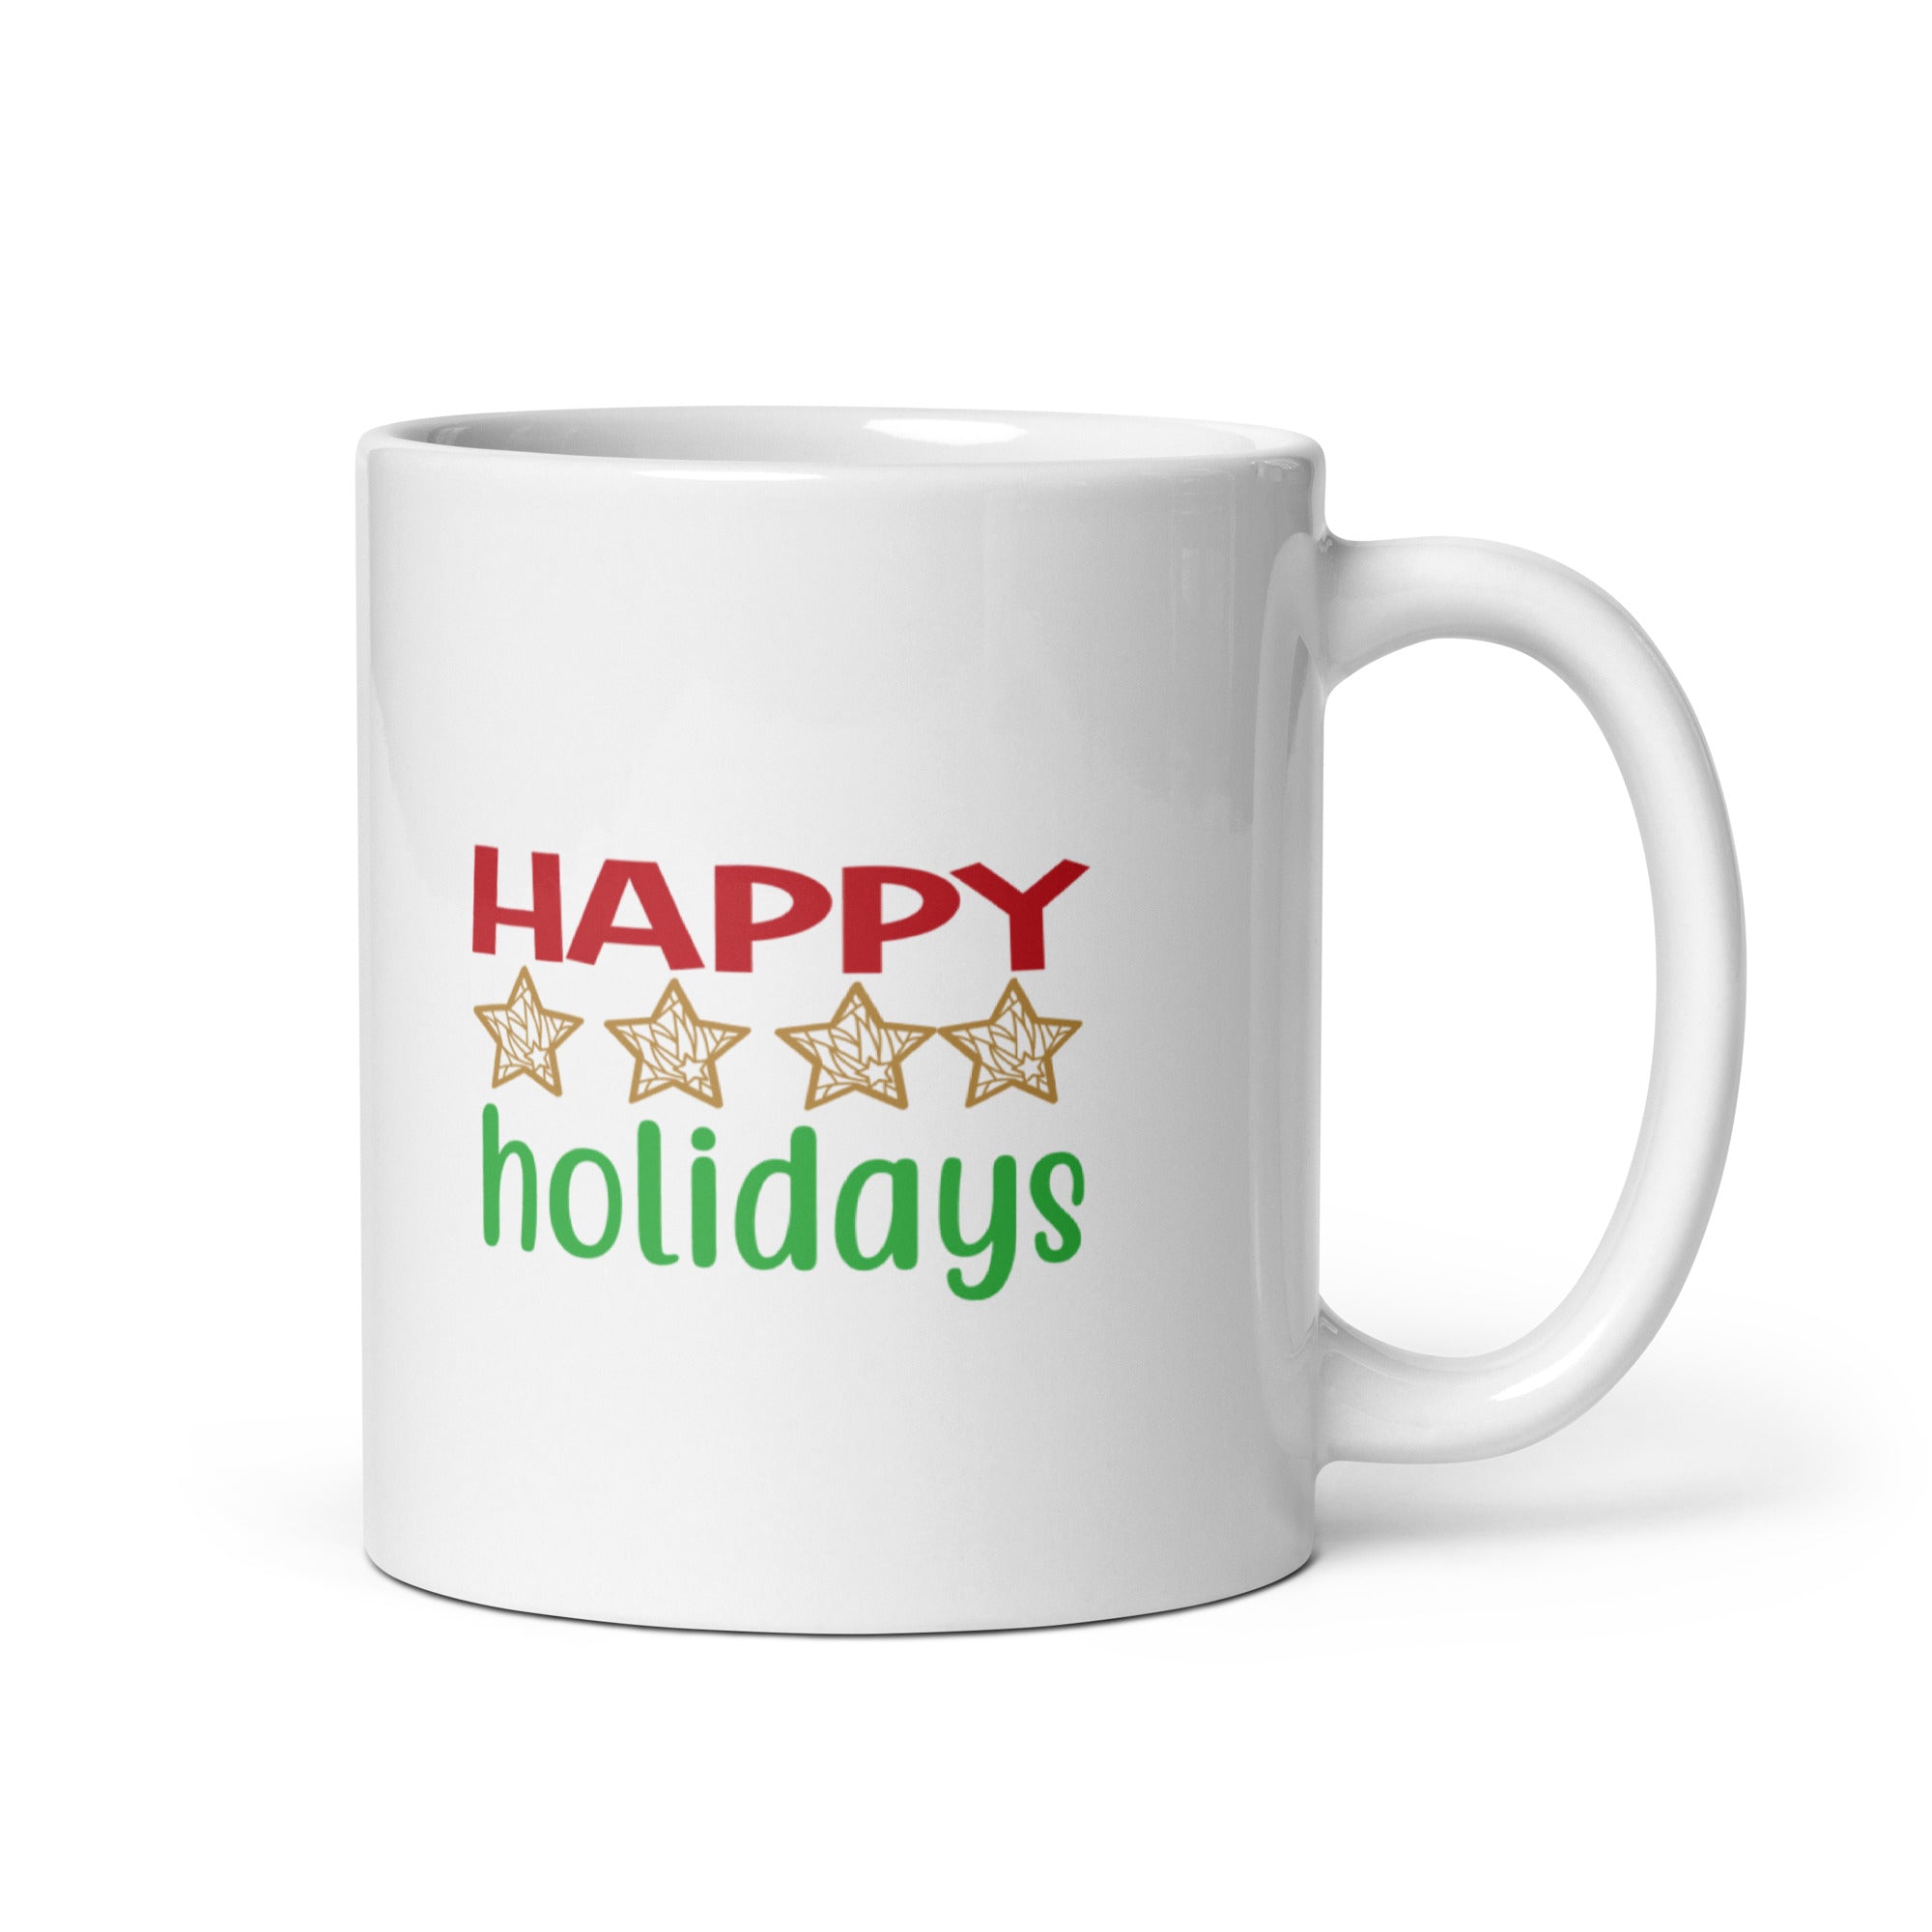 Happy Holidays - White glossy mug